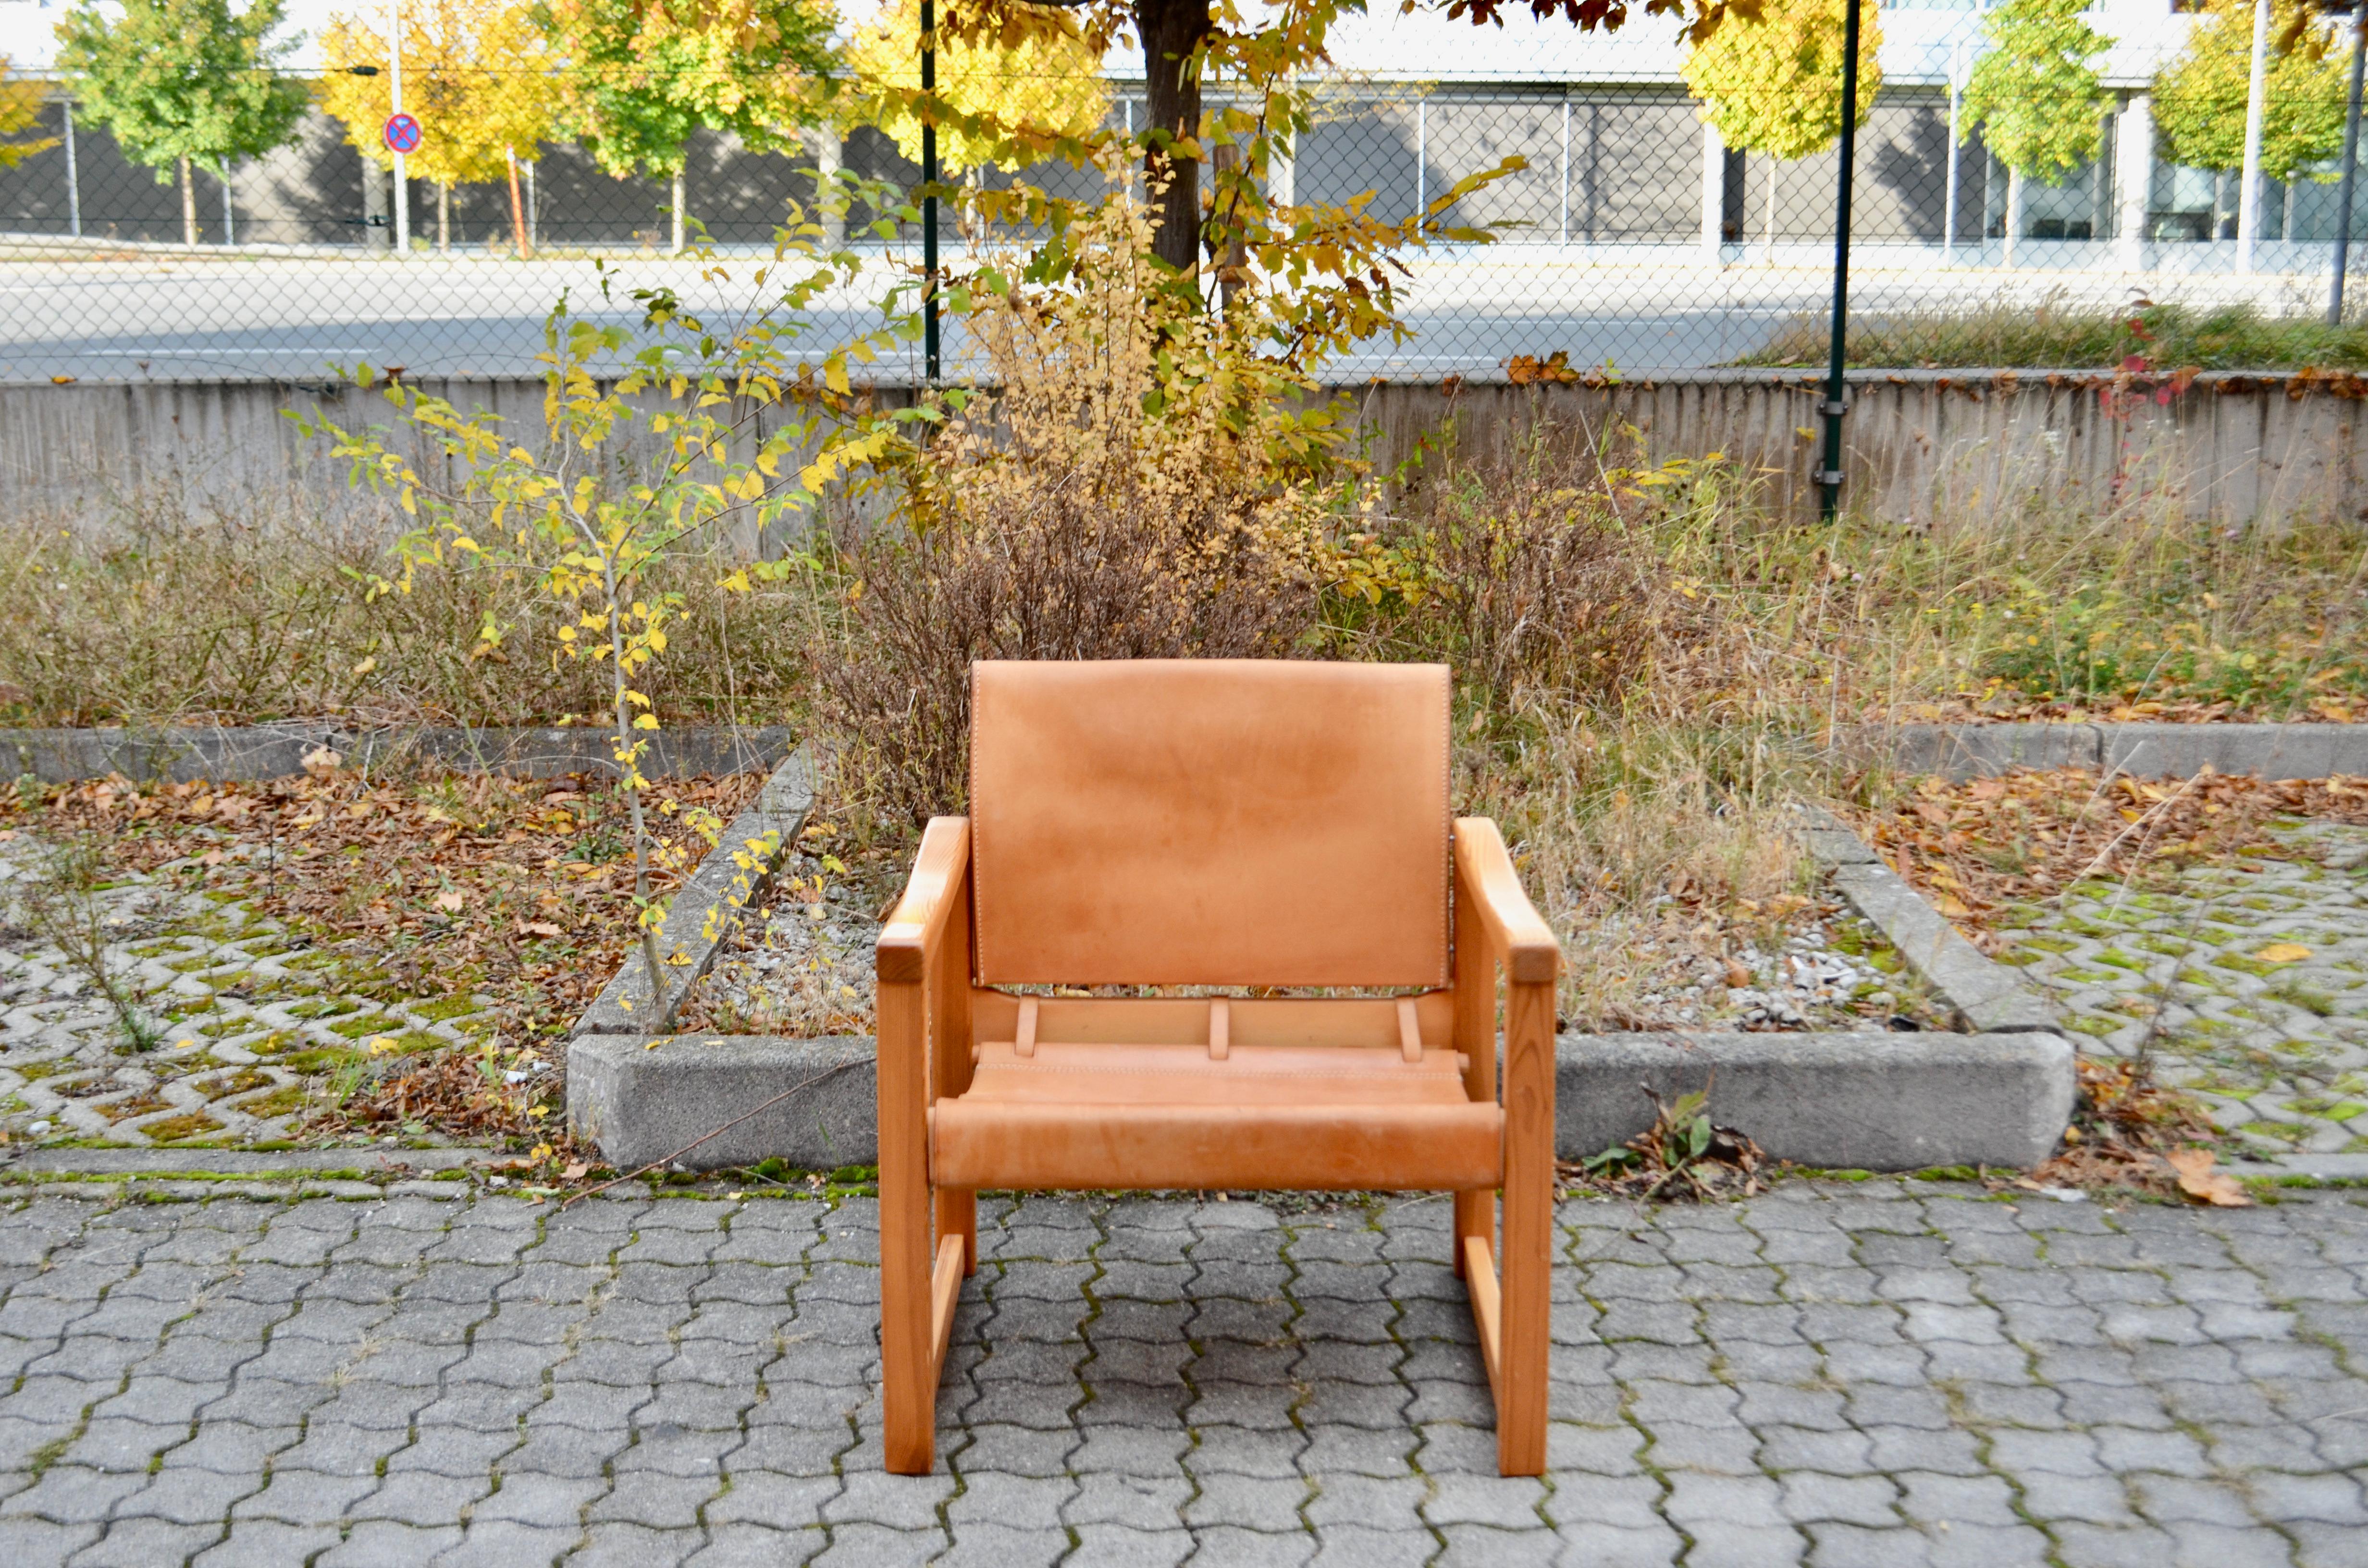 Cette chaise longue Ikea Classic Vintage a été conçue en 1972 par Karin Mobring.
Il est doté d'un cadre solide en pin scandinave.
Les accoudoirs ont une forme très agréable qui permet un bon confort pour les bras.
Le cuir est un cuir de selle